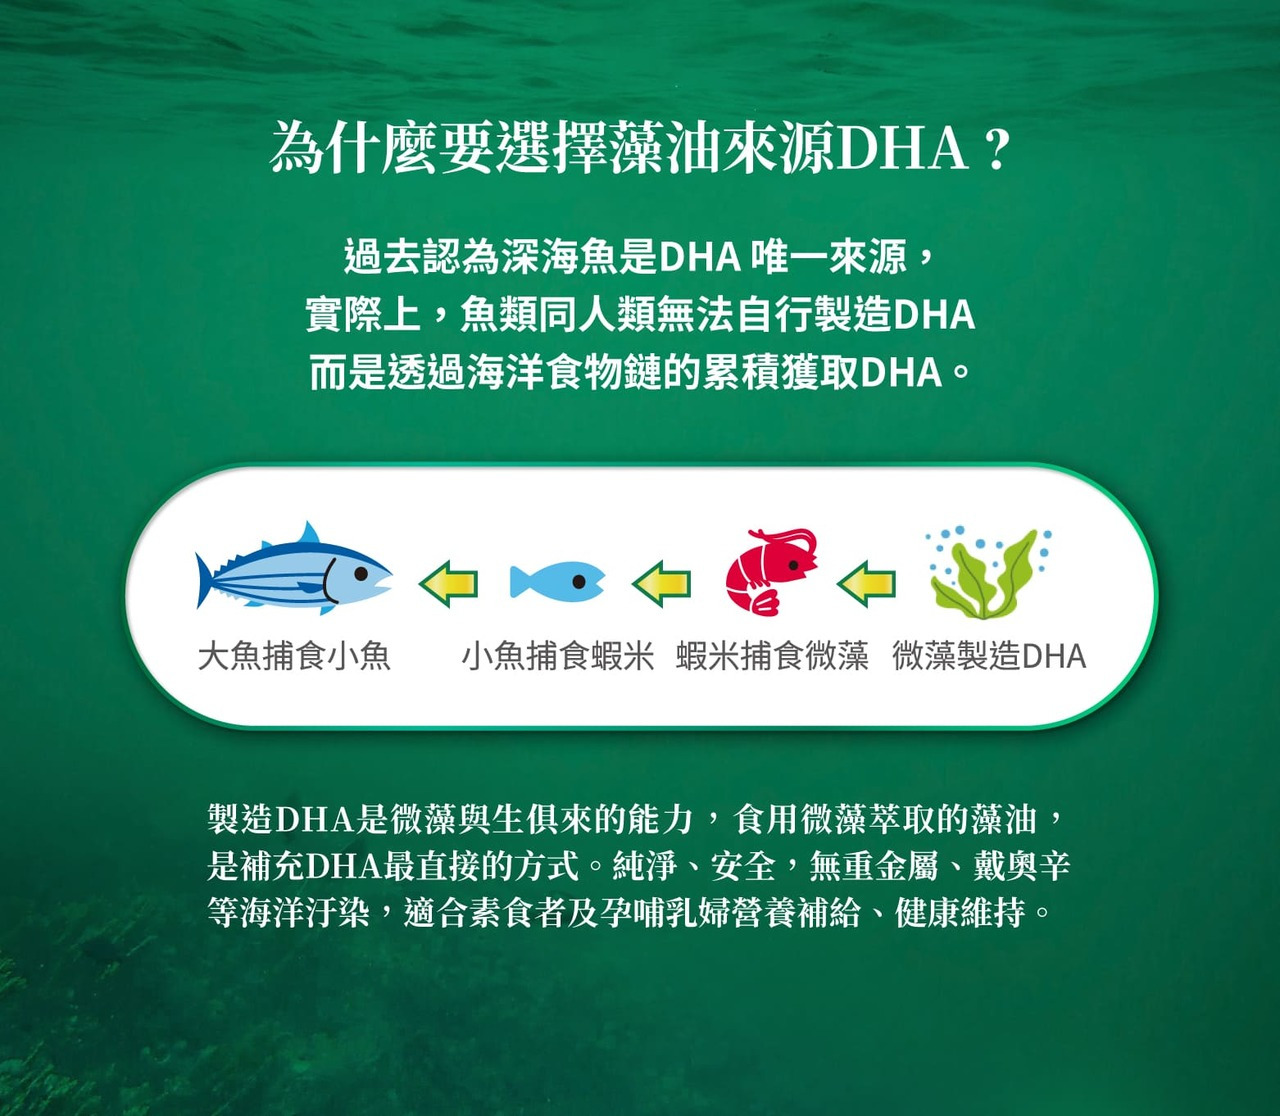 製造DHA是微藻與生俱來的能力，食用微藻萃取的藻油是補充DHA最直接的方式，純淨無重金屬、戴奧辛等汙染。